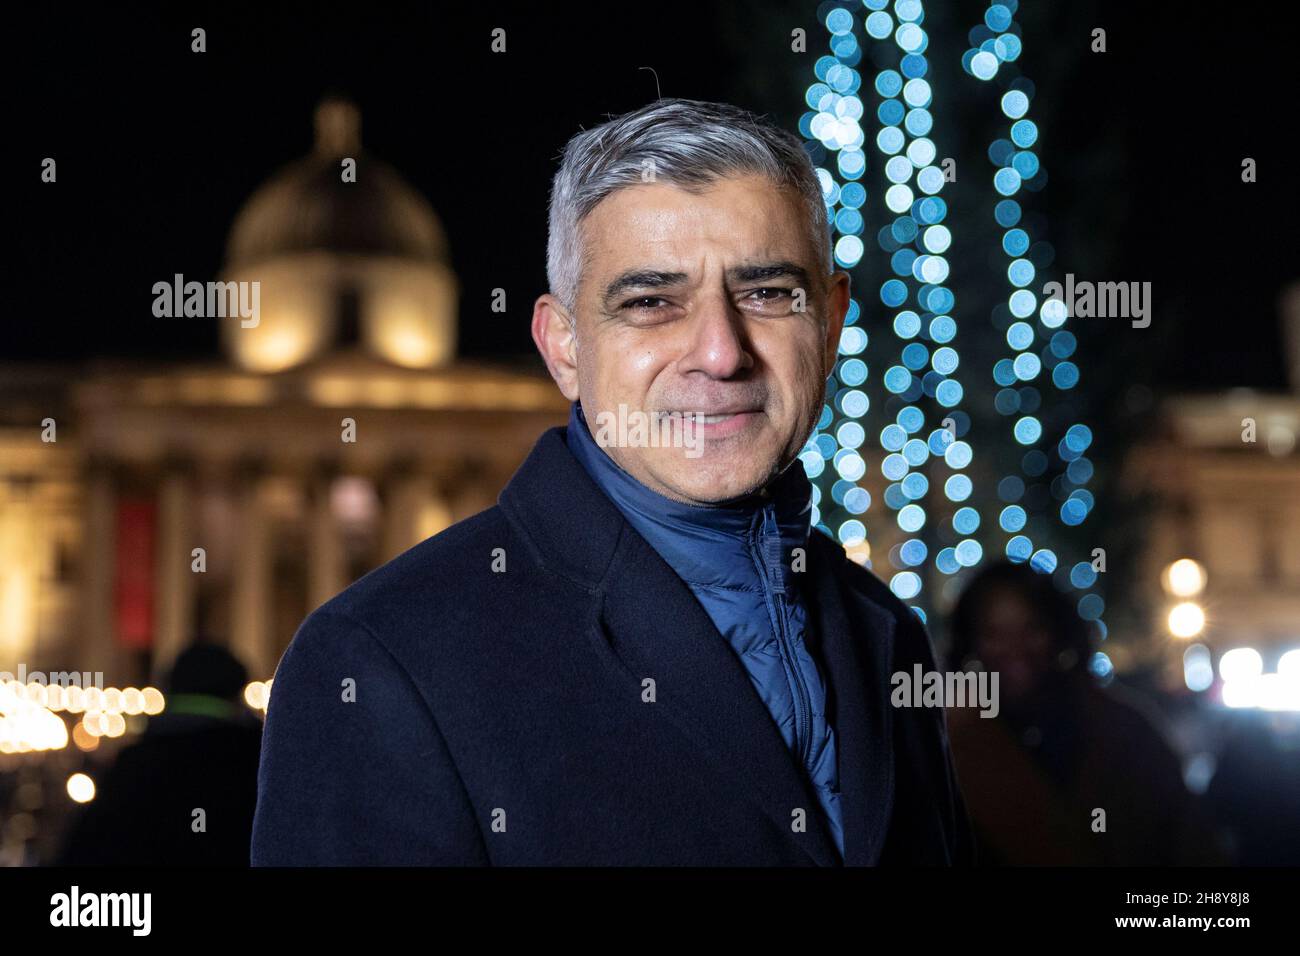 Alcalde de Londres, Sadiq Khan posó para una fotografía después de la ceremonia de iluminación del árbol de Navidad de Trafalgar Square en Trafalgar Square, Londres, Gran Bretaña, 2 de diciembre de 2021. REUTERS/May James Foto de stock